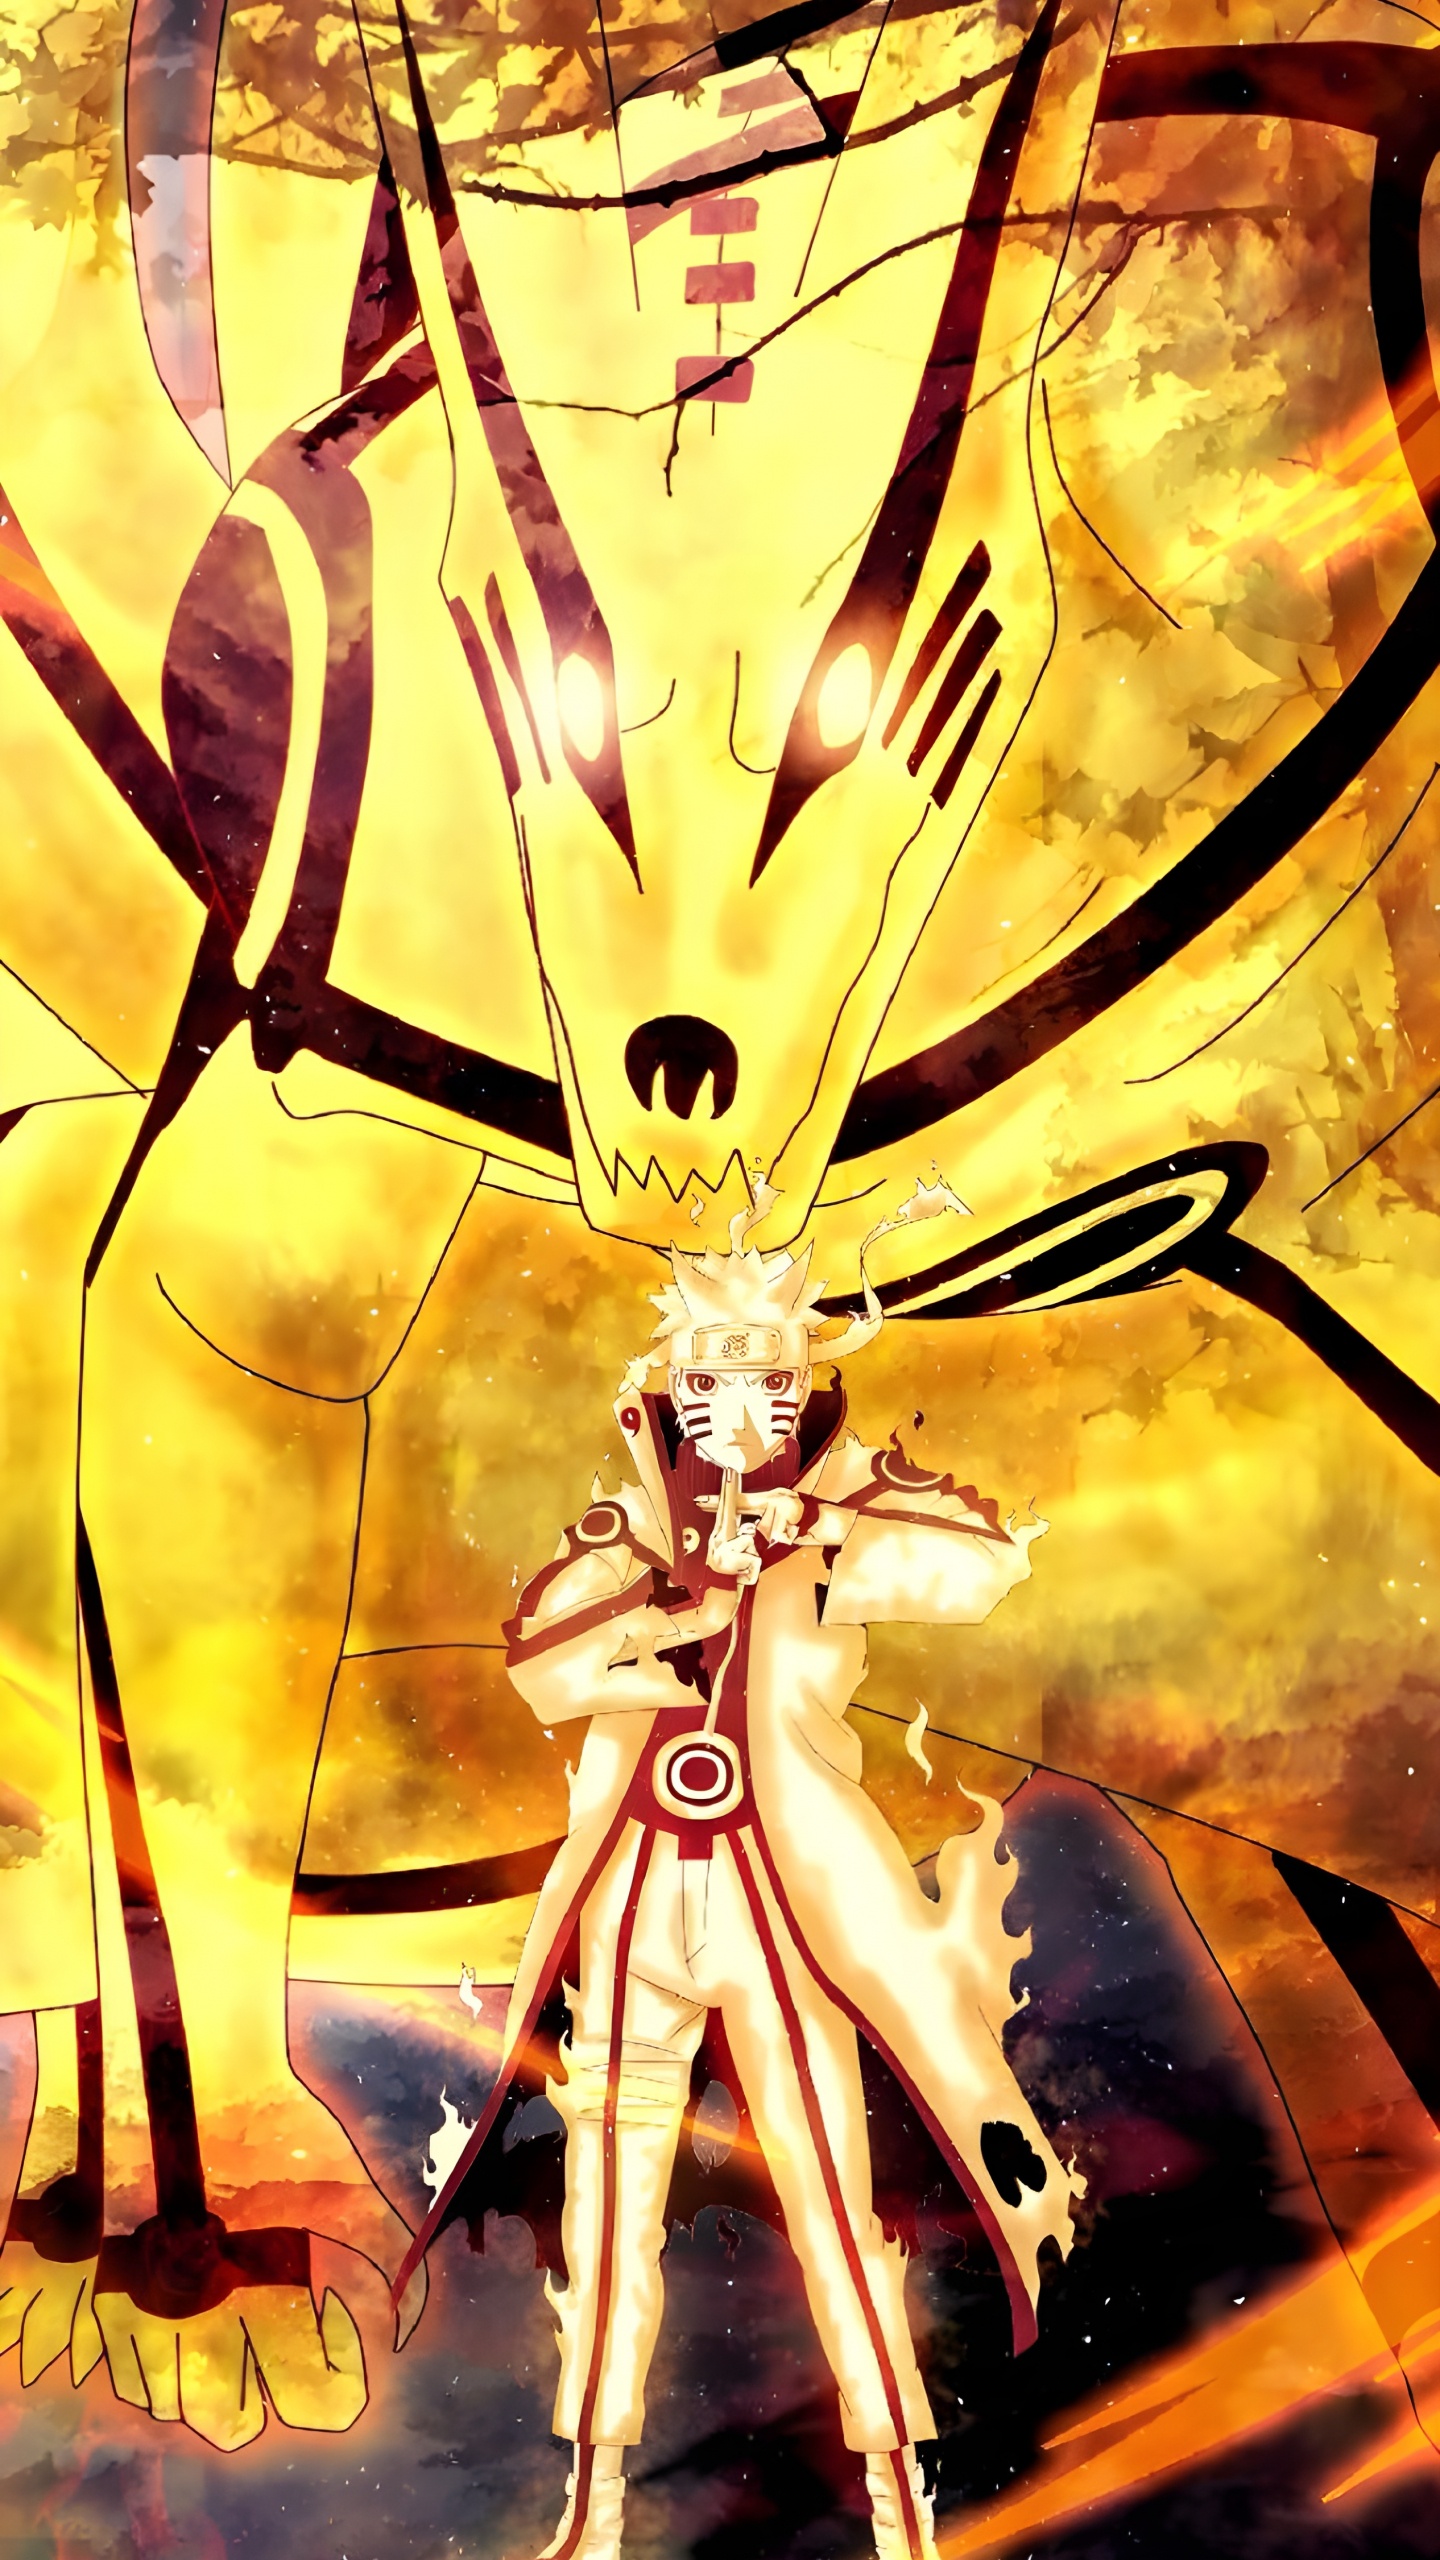 Anime, Naruto Berühmt, Naruto Uzumaki, Nagato, Sasuke Uchiha. Wallpaper in 1440x2560 Resolution